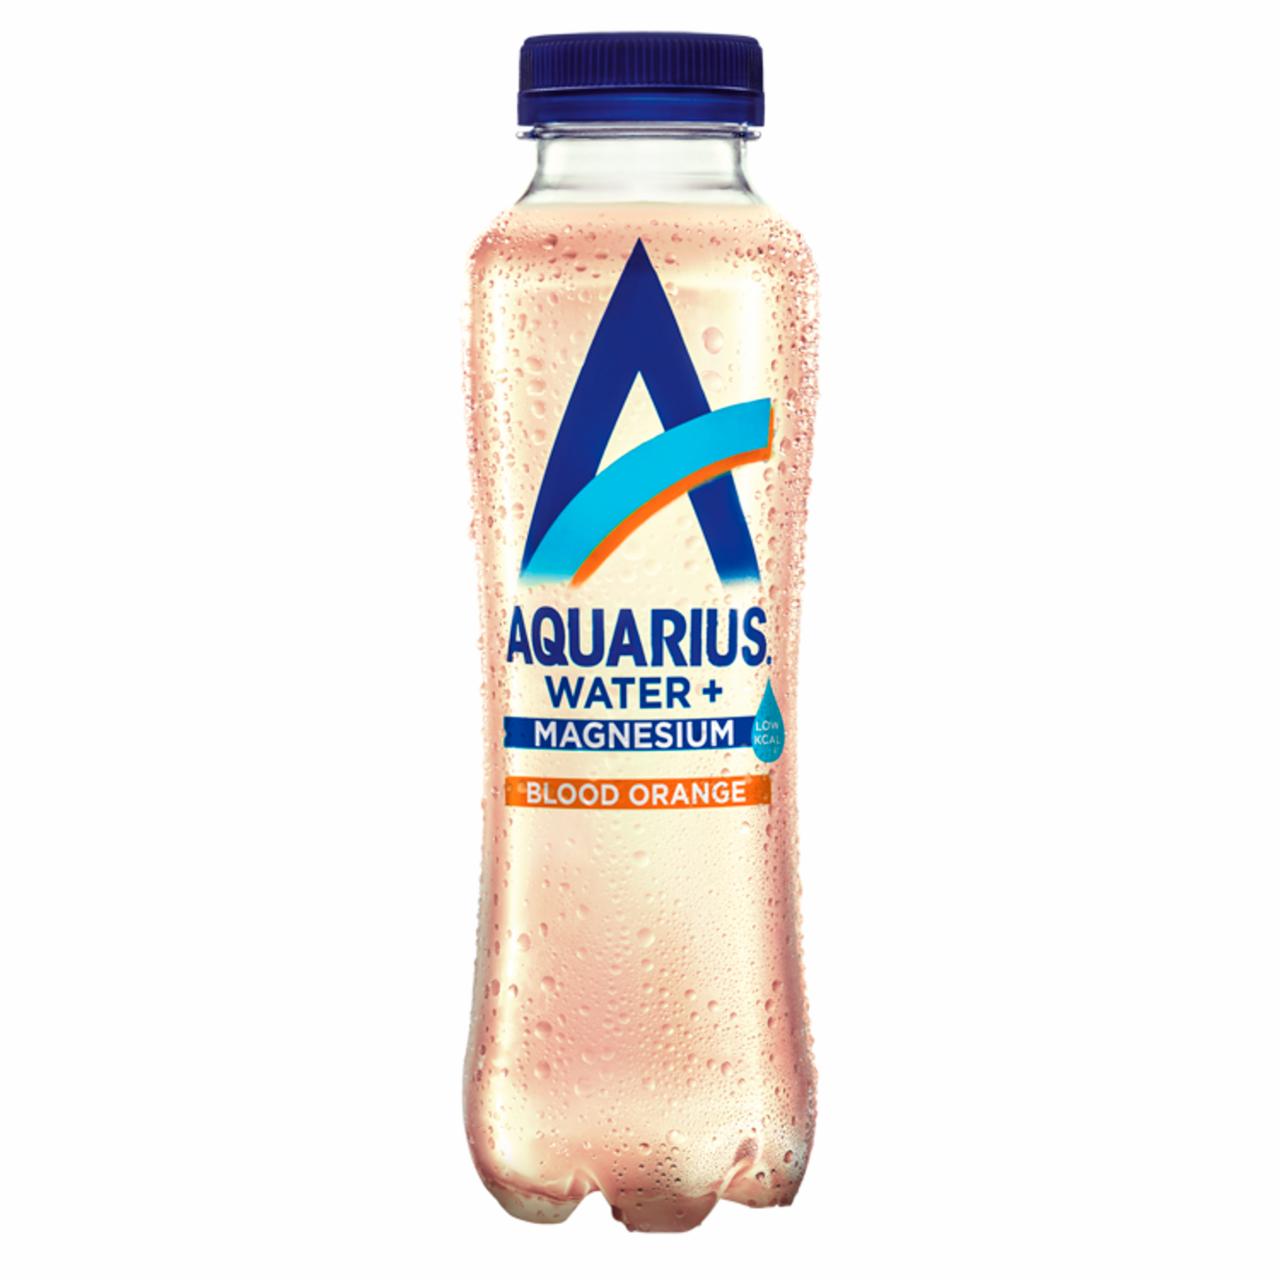 Képek - Aquarius Water+ vérnarancs ízű szénsavmentes üdítőital hozzáadott magnéziummal 400 ml